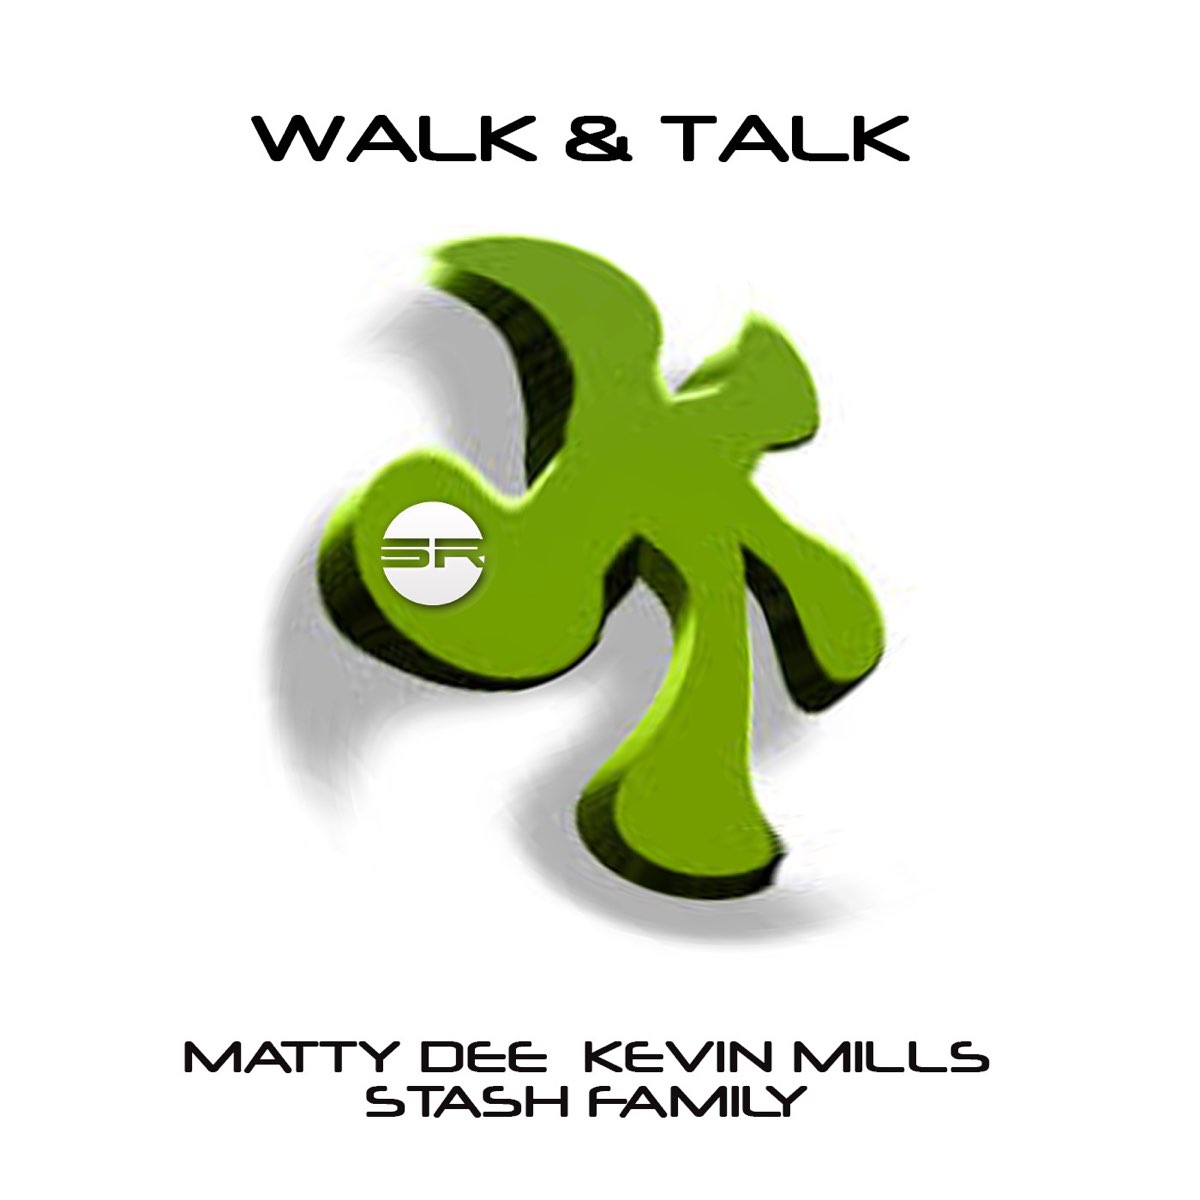 Walk talk. Walk the talk Графика. Walk & talk by. Walk talk блоггер